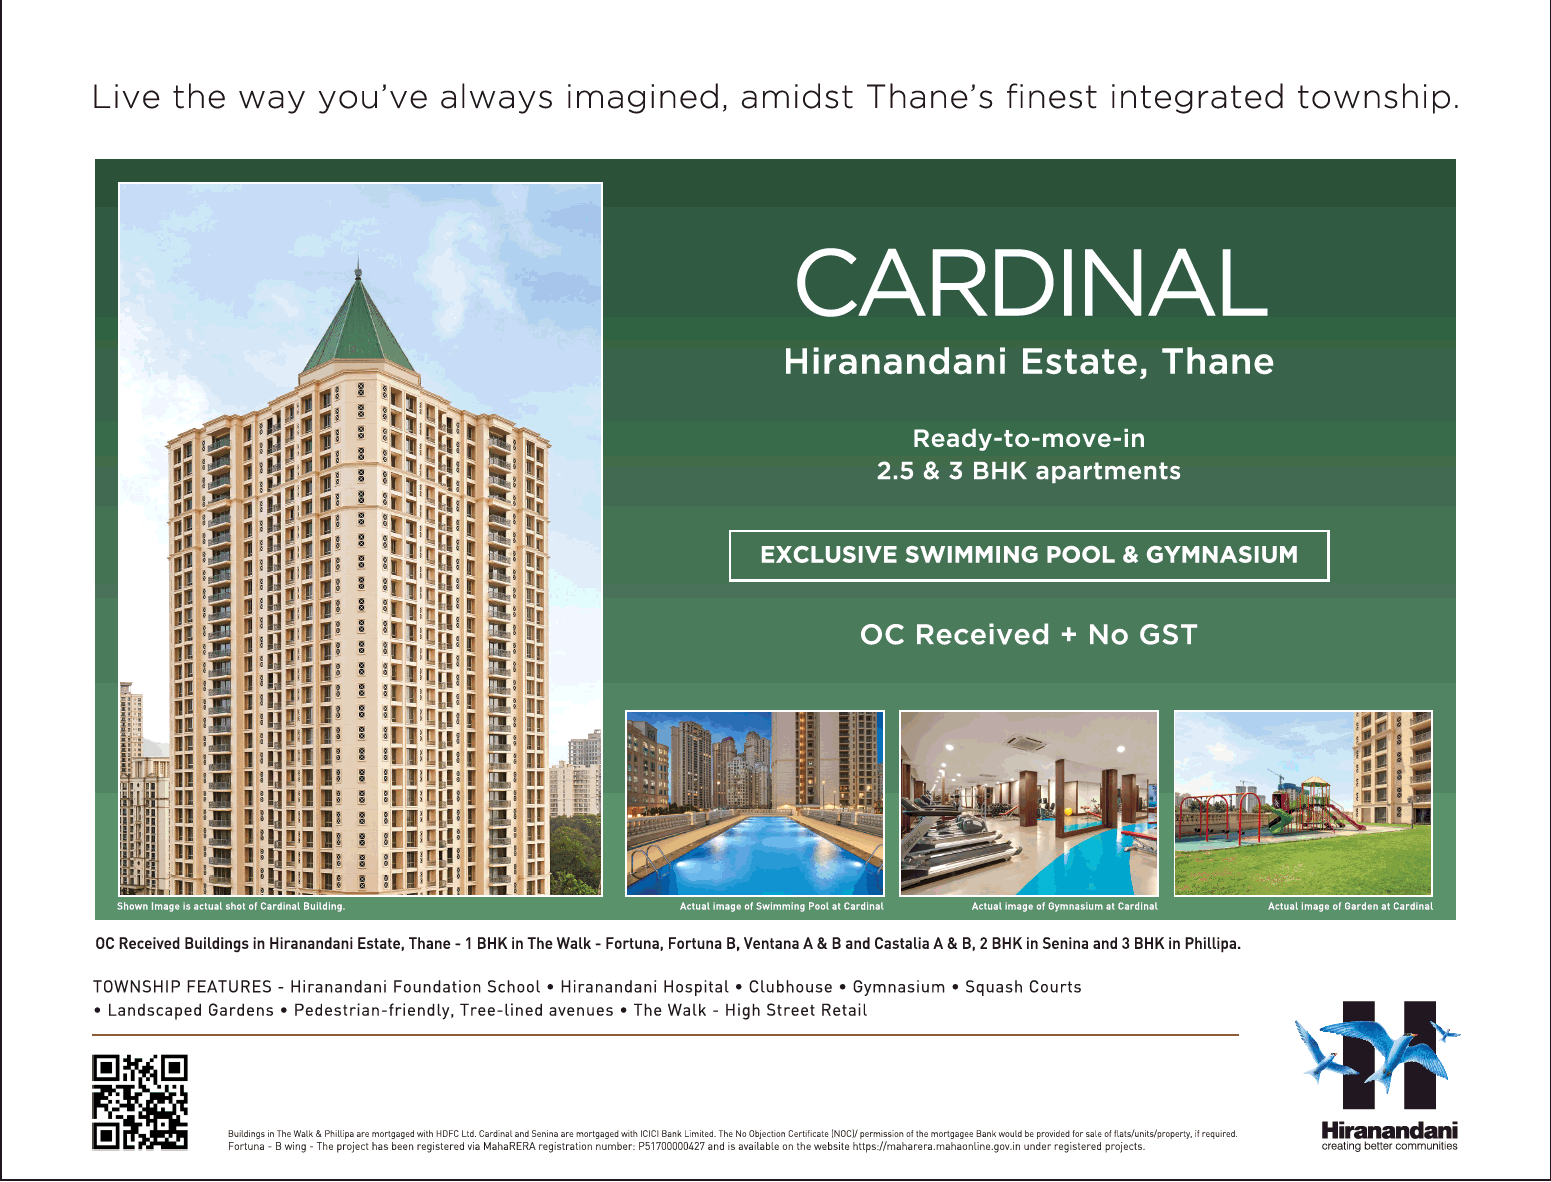 Avail exclusive swimming pool & gymnasium at Hiranandani Cardinal in Mumbai